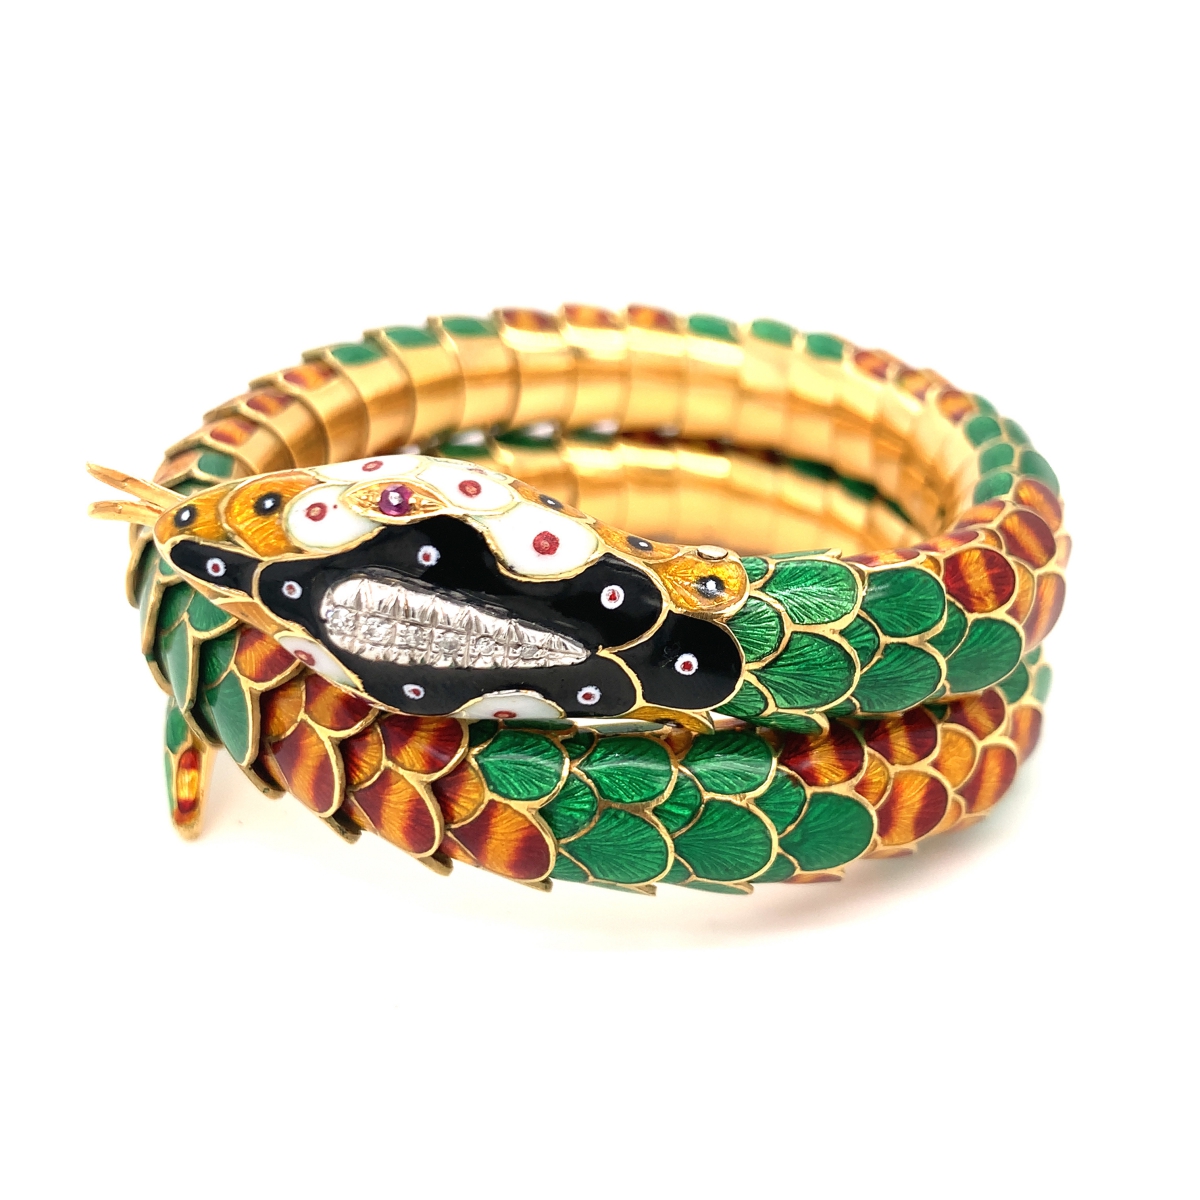 18 Karat Yellow Gold Snake Bracelet with Enamel